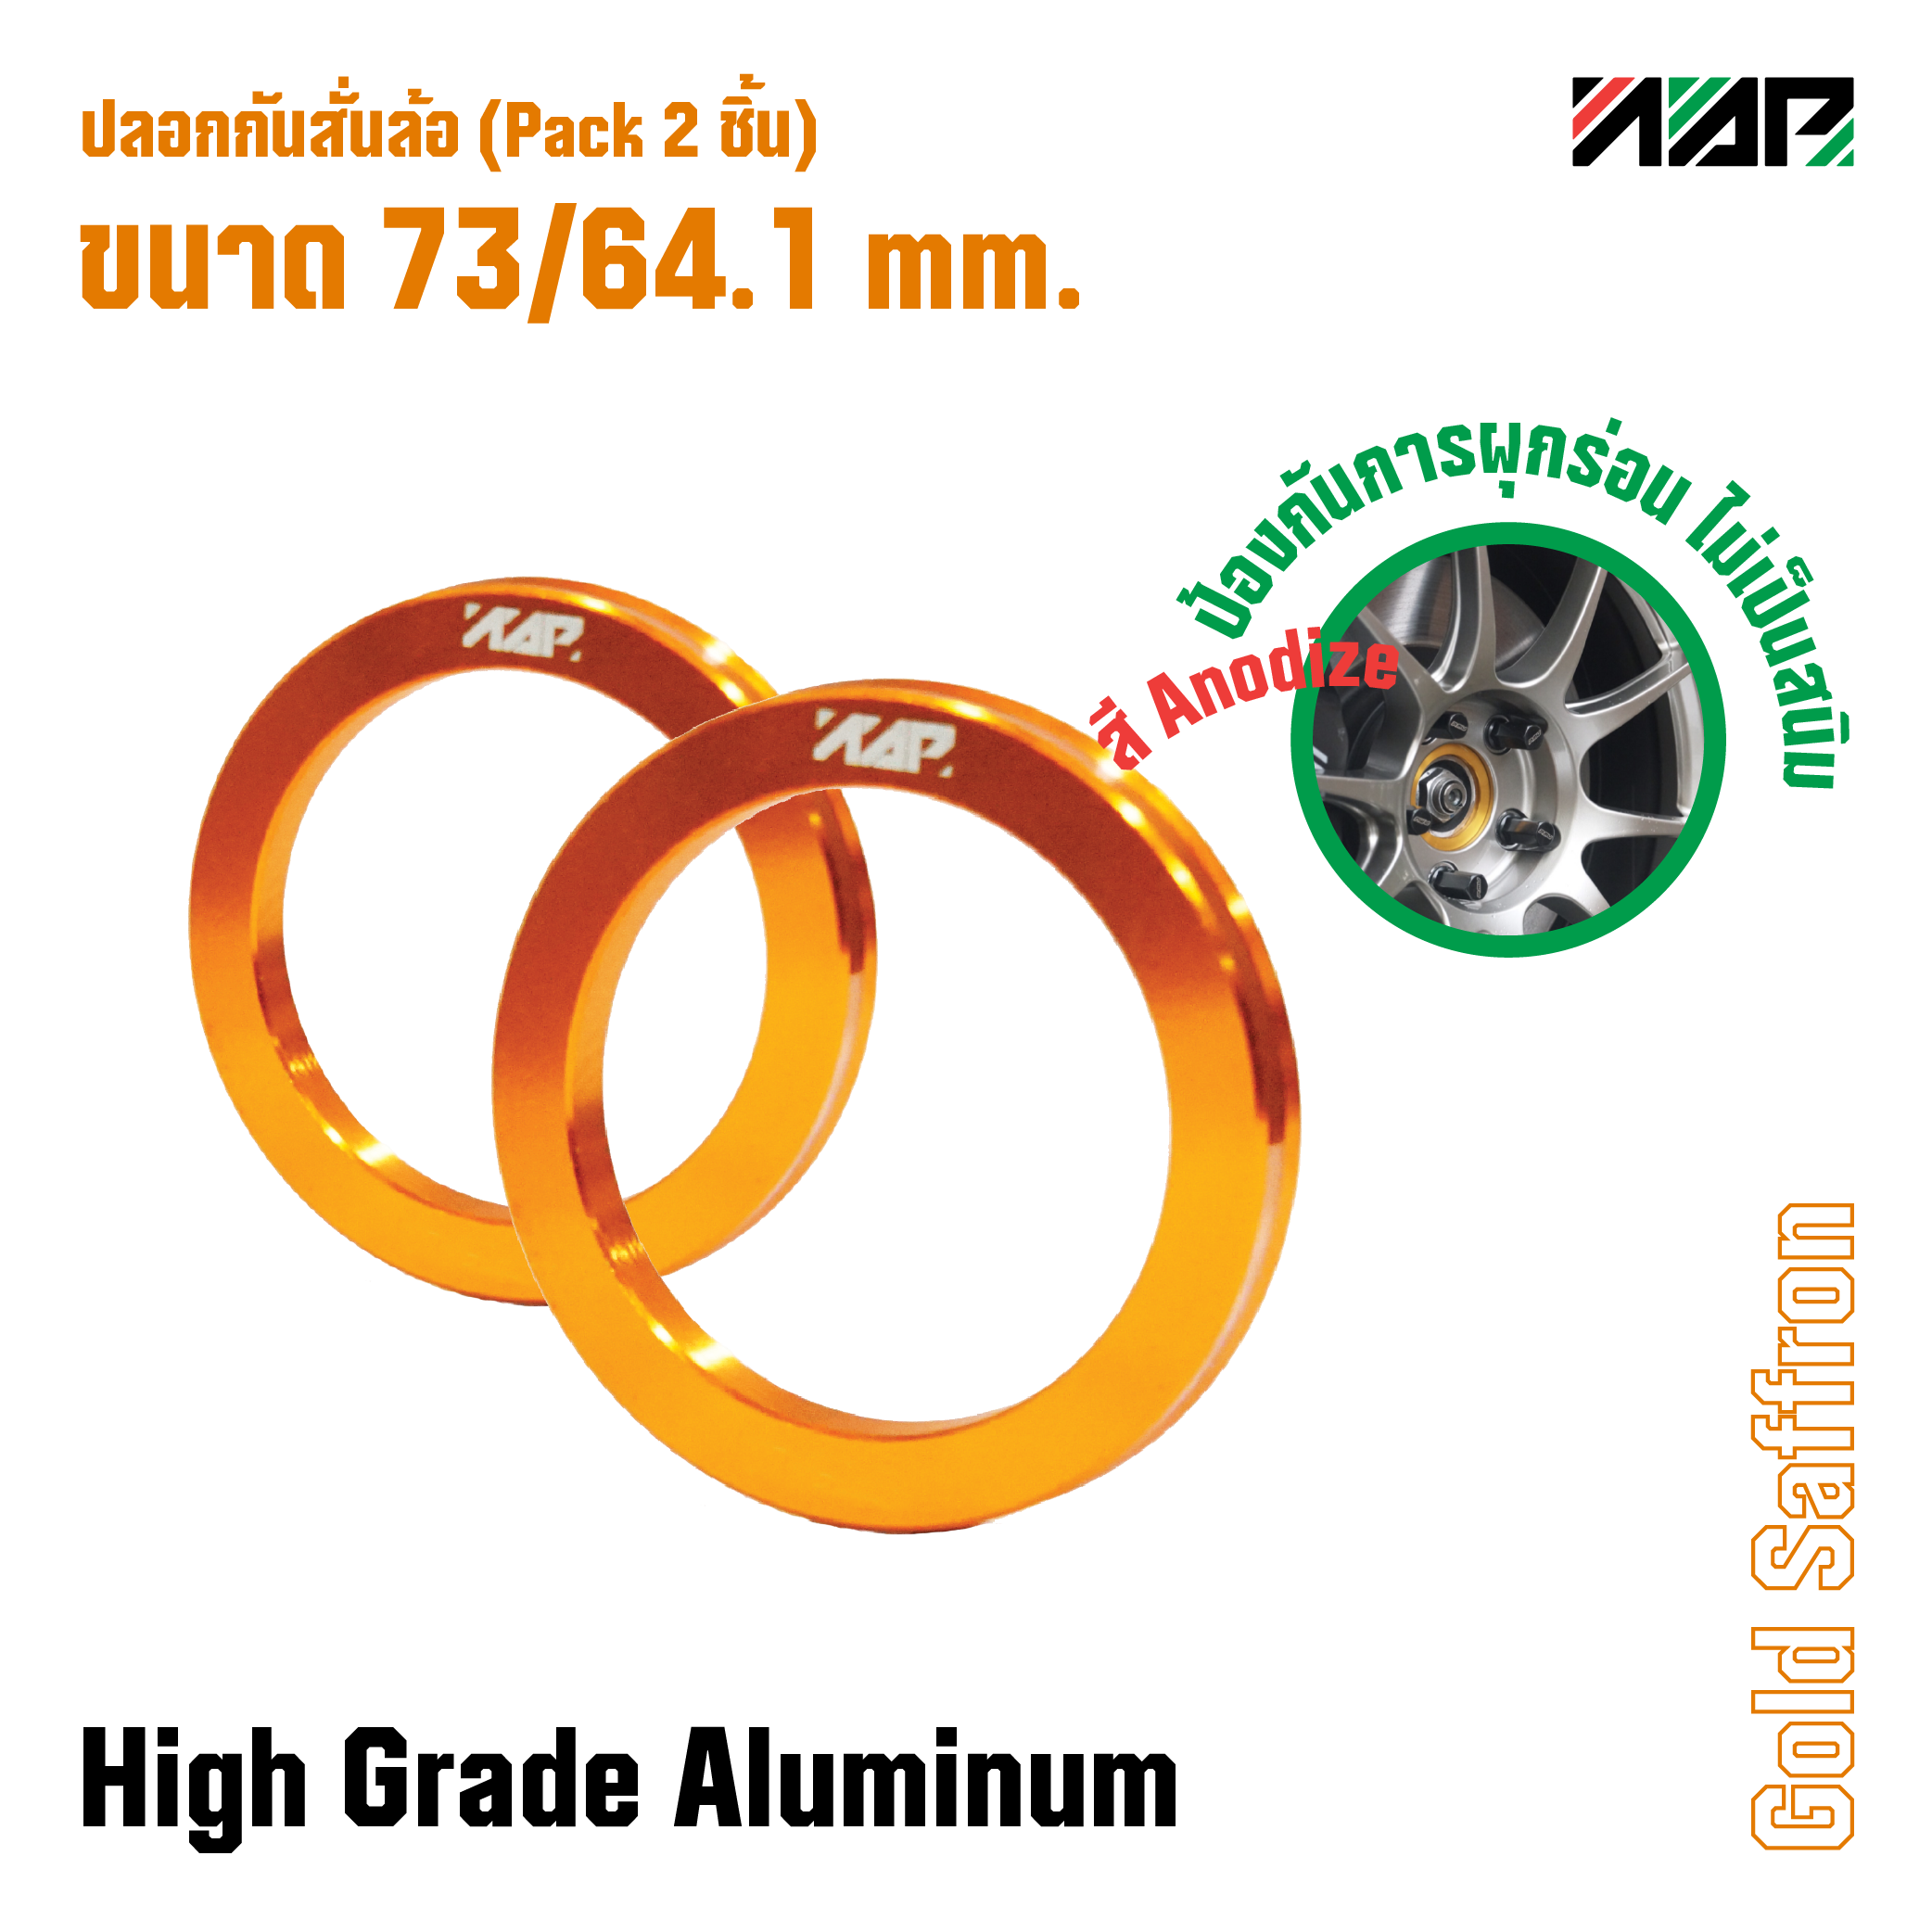 ปลอกกันสั่นล้อ Hub ring 73/64.1 mm. (Pack 2 ชิ้น) Civic FD, Odyssey, Accord, CRV สี Gold Saffron